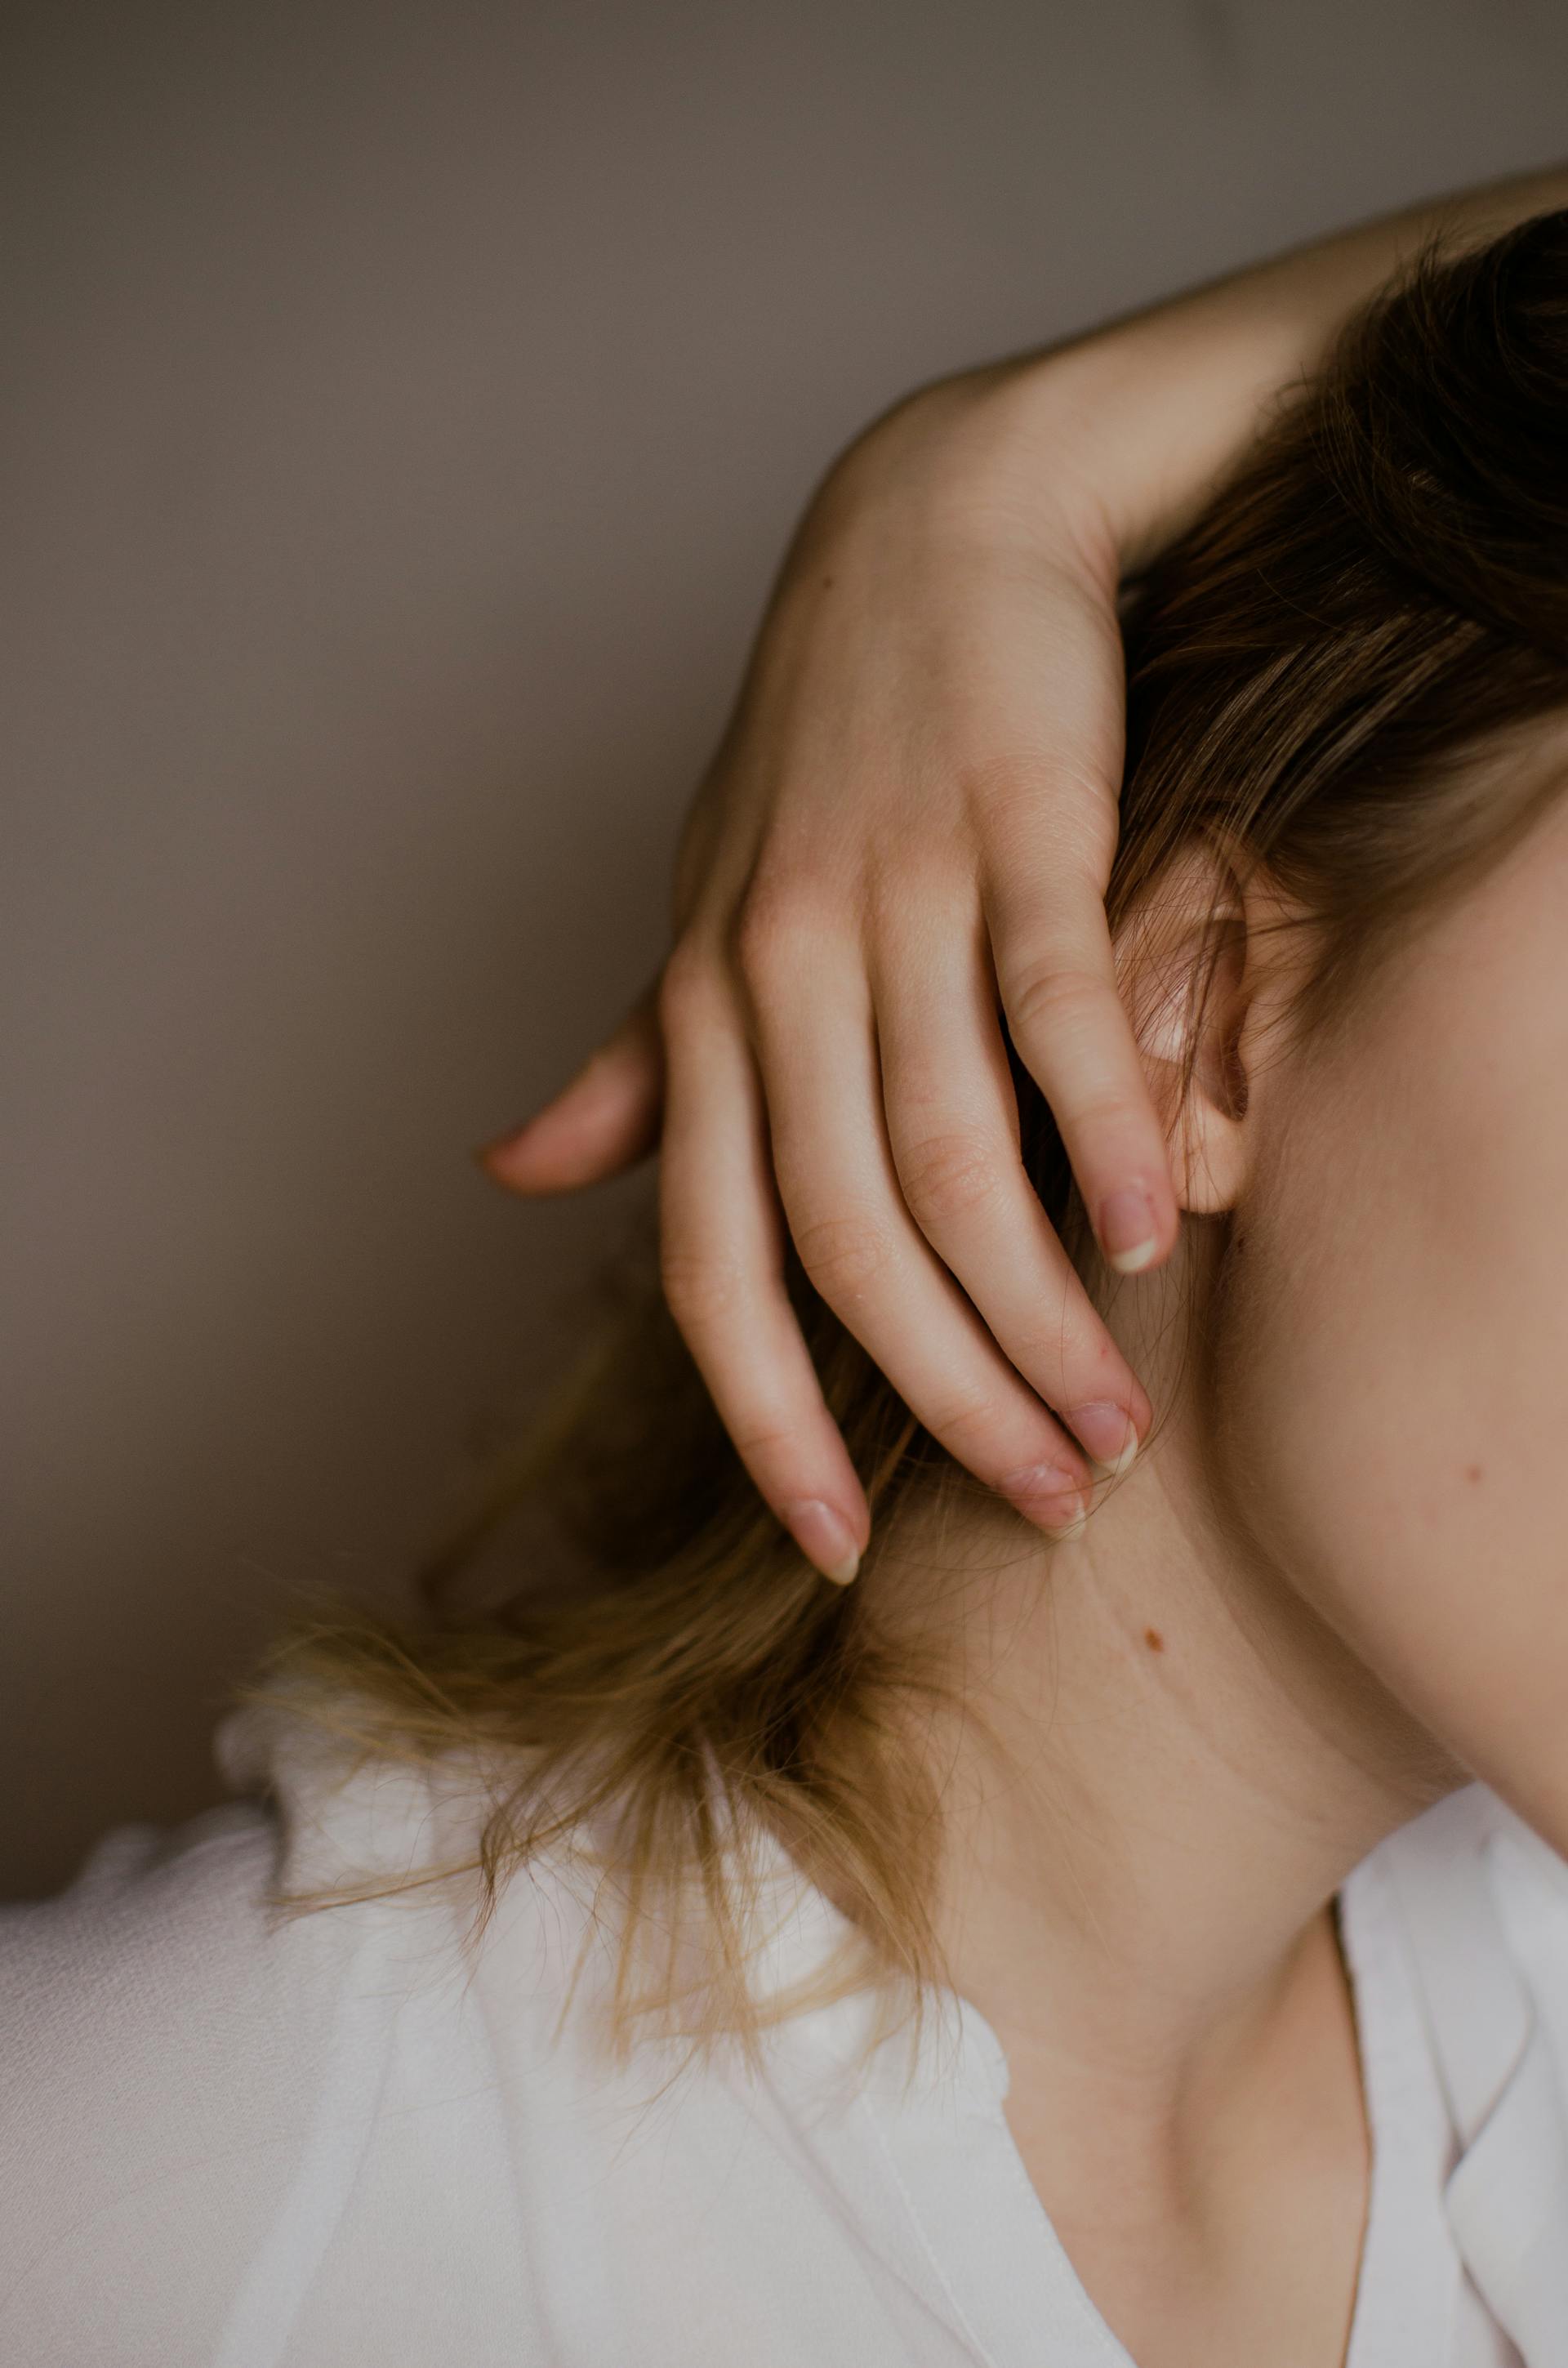 Une tache de naissance sur le cou d'une femme | Source : Pexels